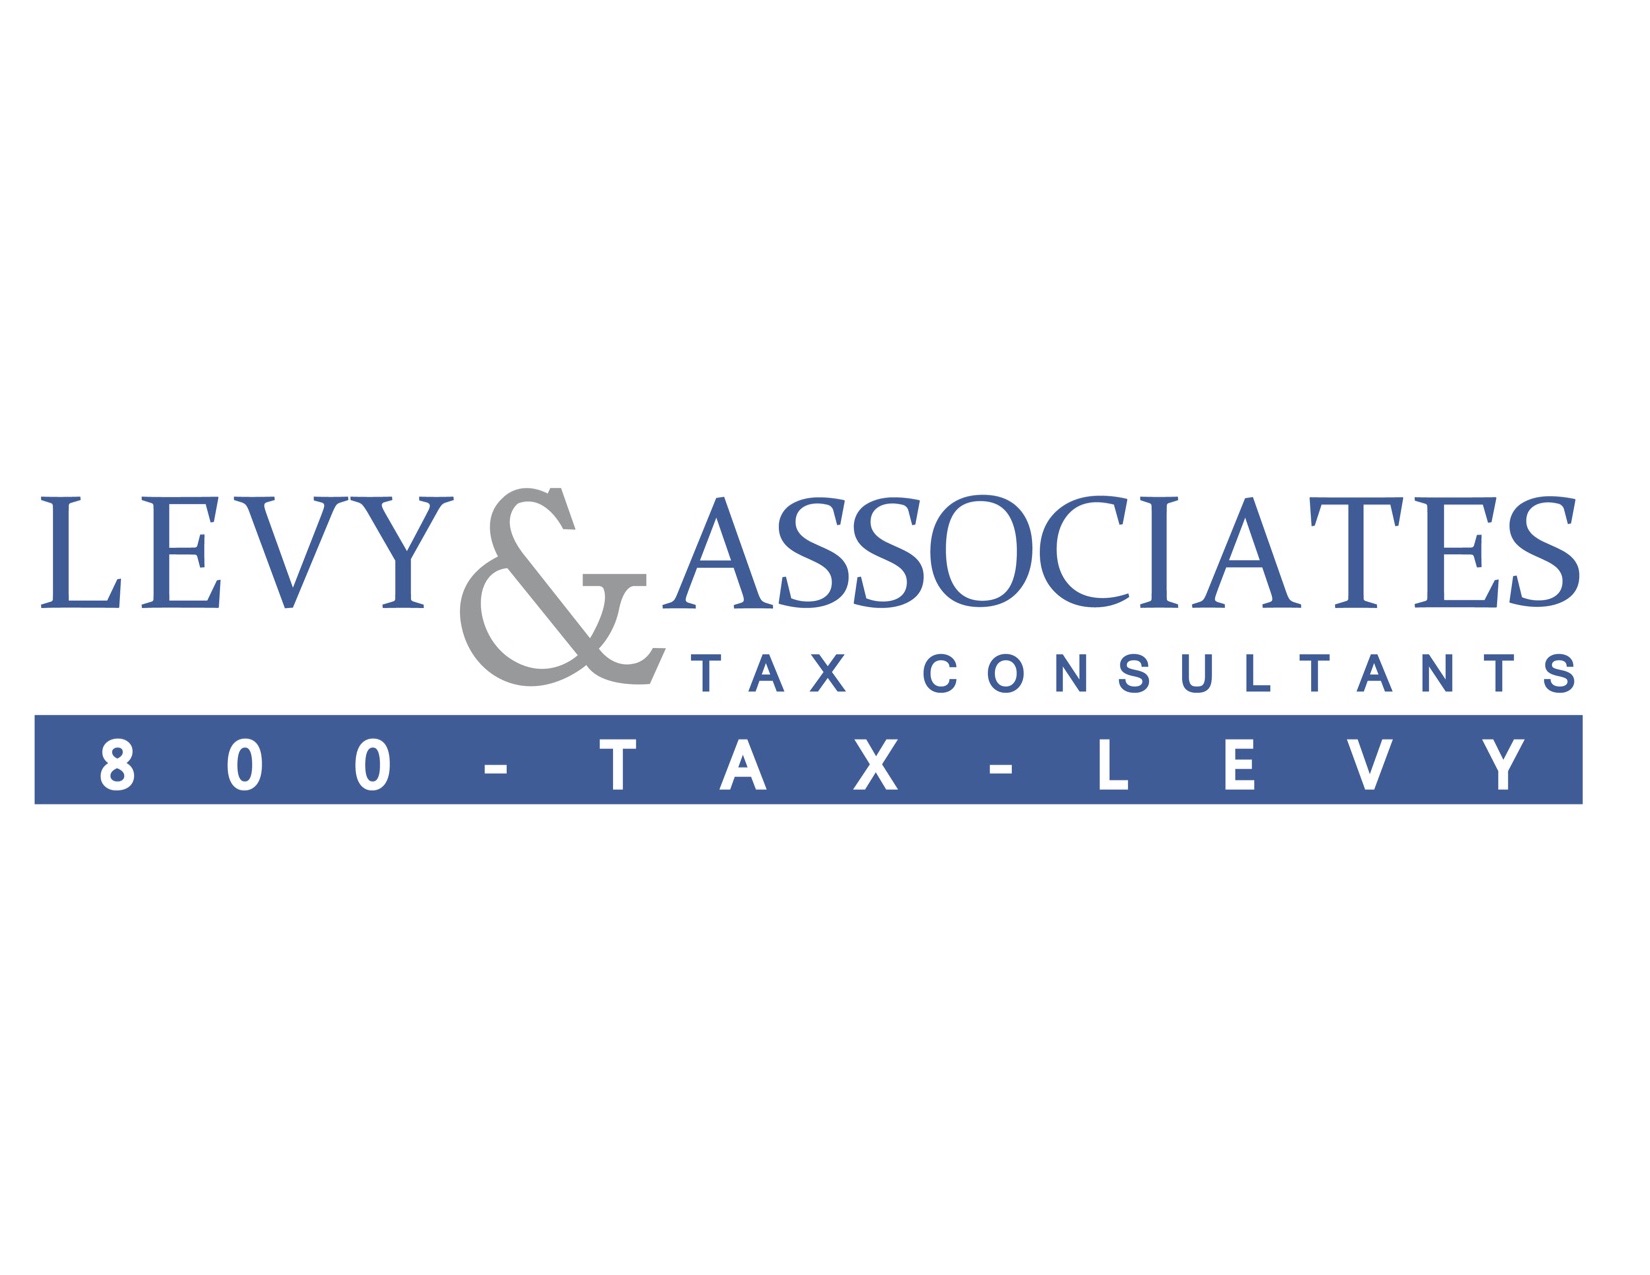 Levy & Associates